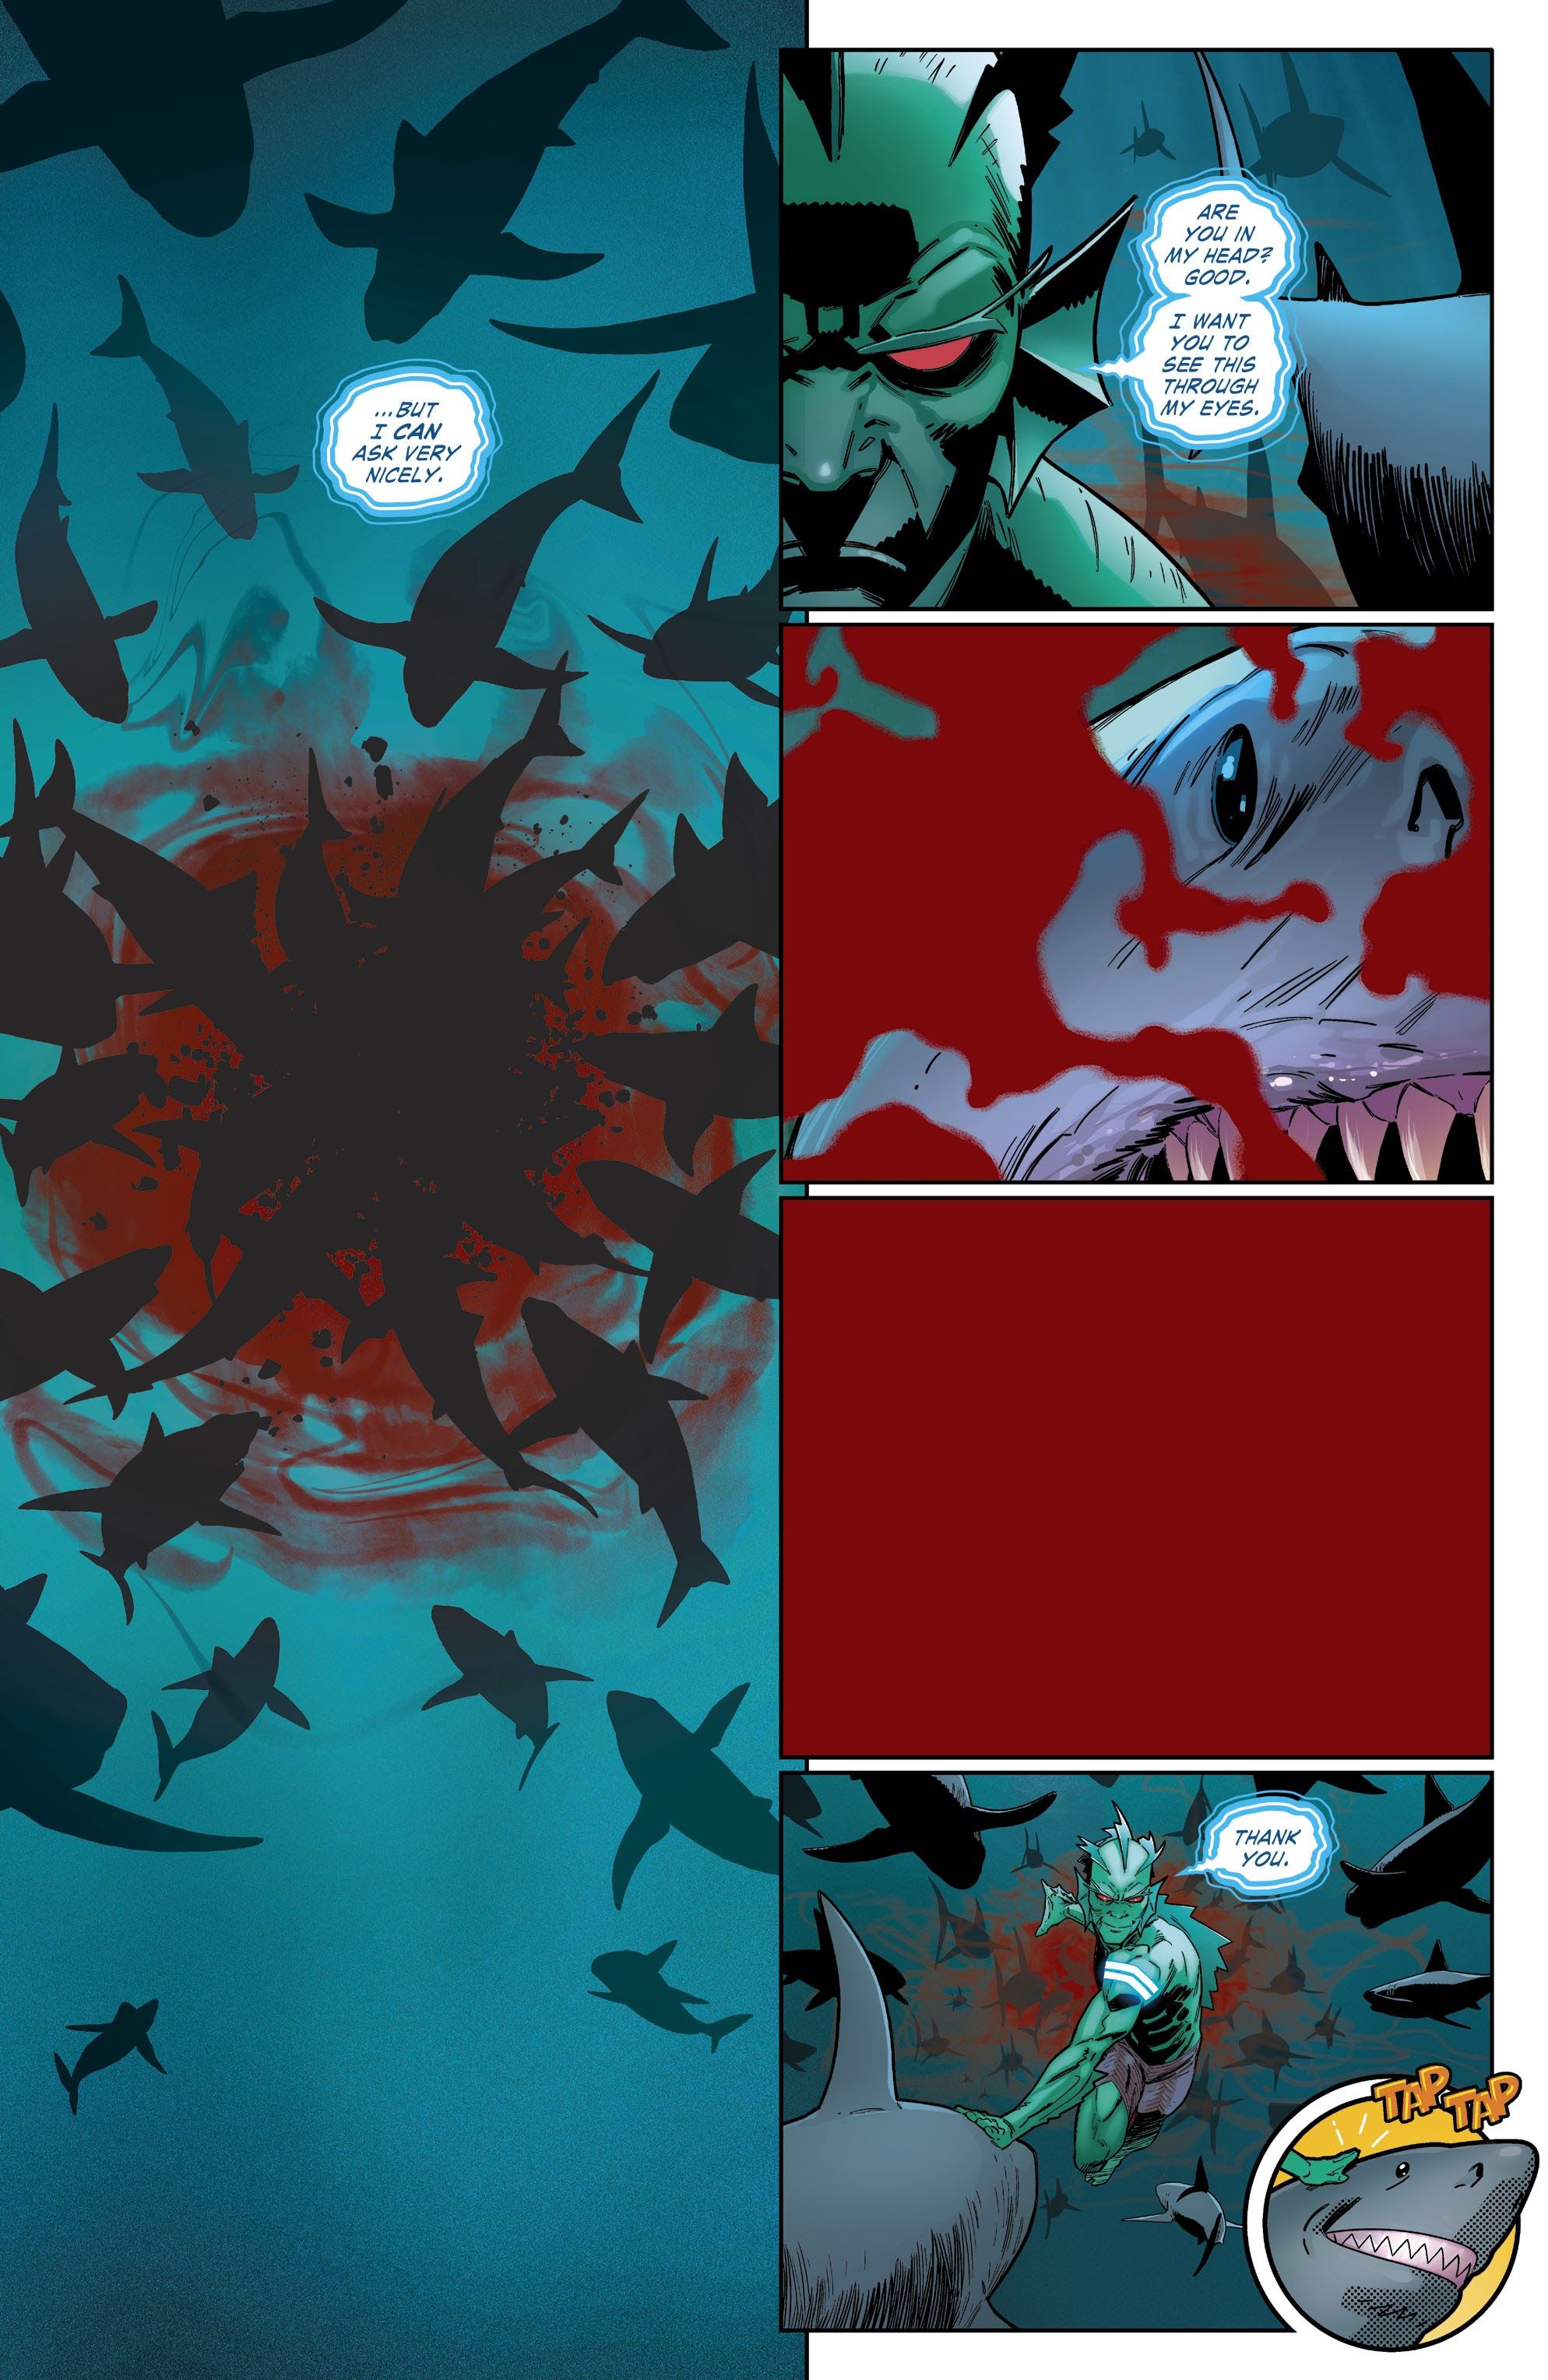 Suicide Squad #3 art - Fin kills Shark